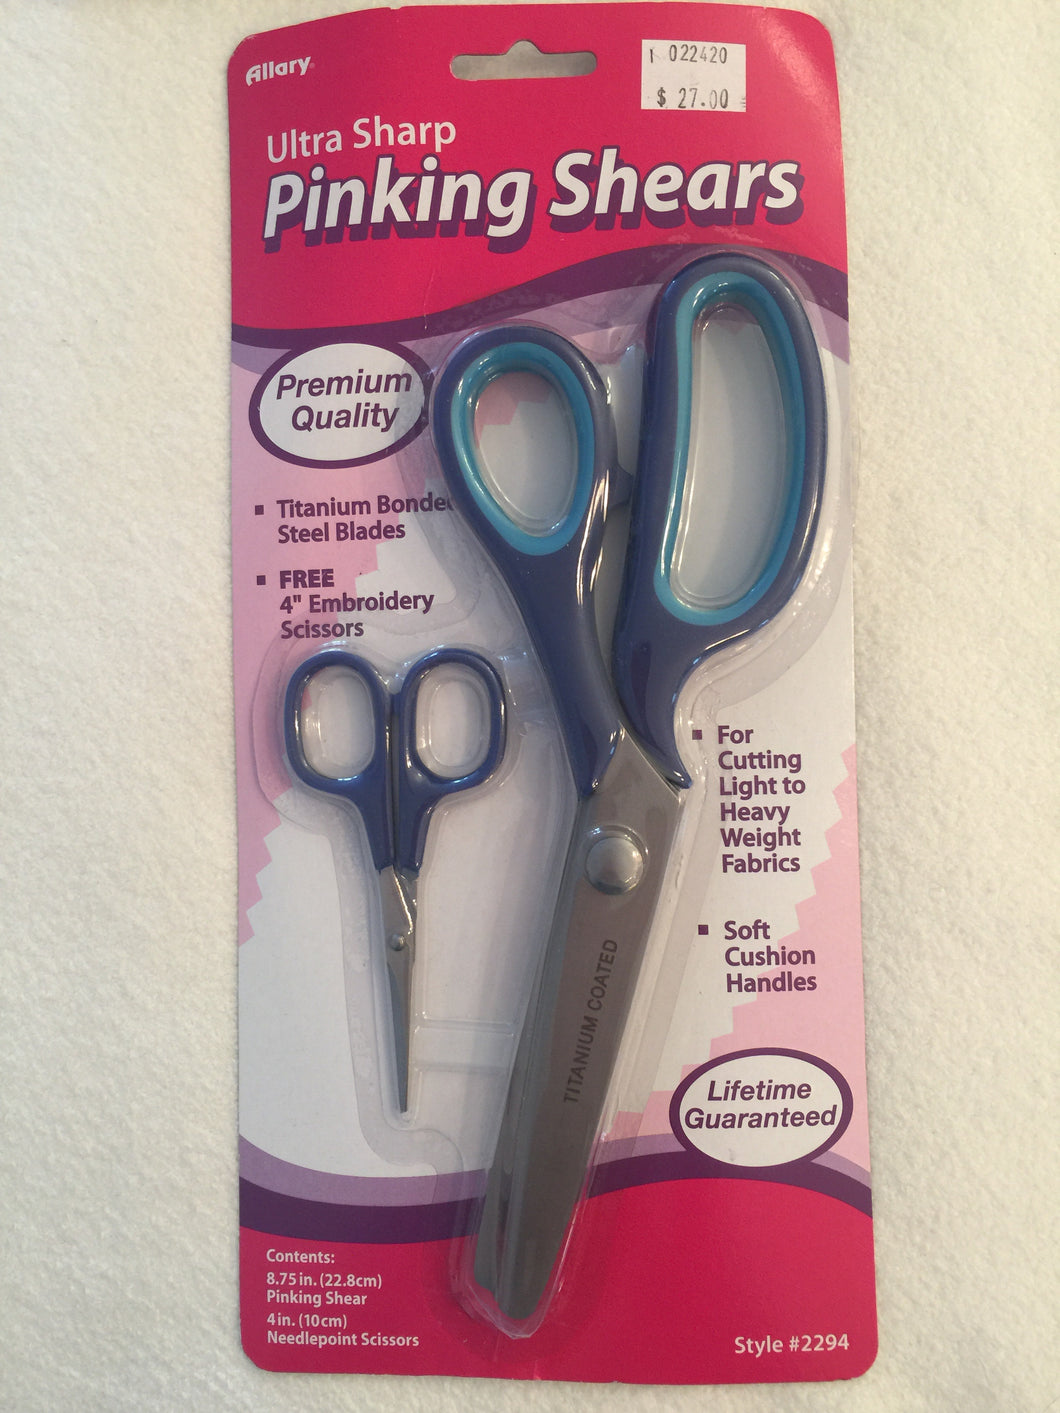 Ultra Sharp Pinking Shears